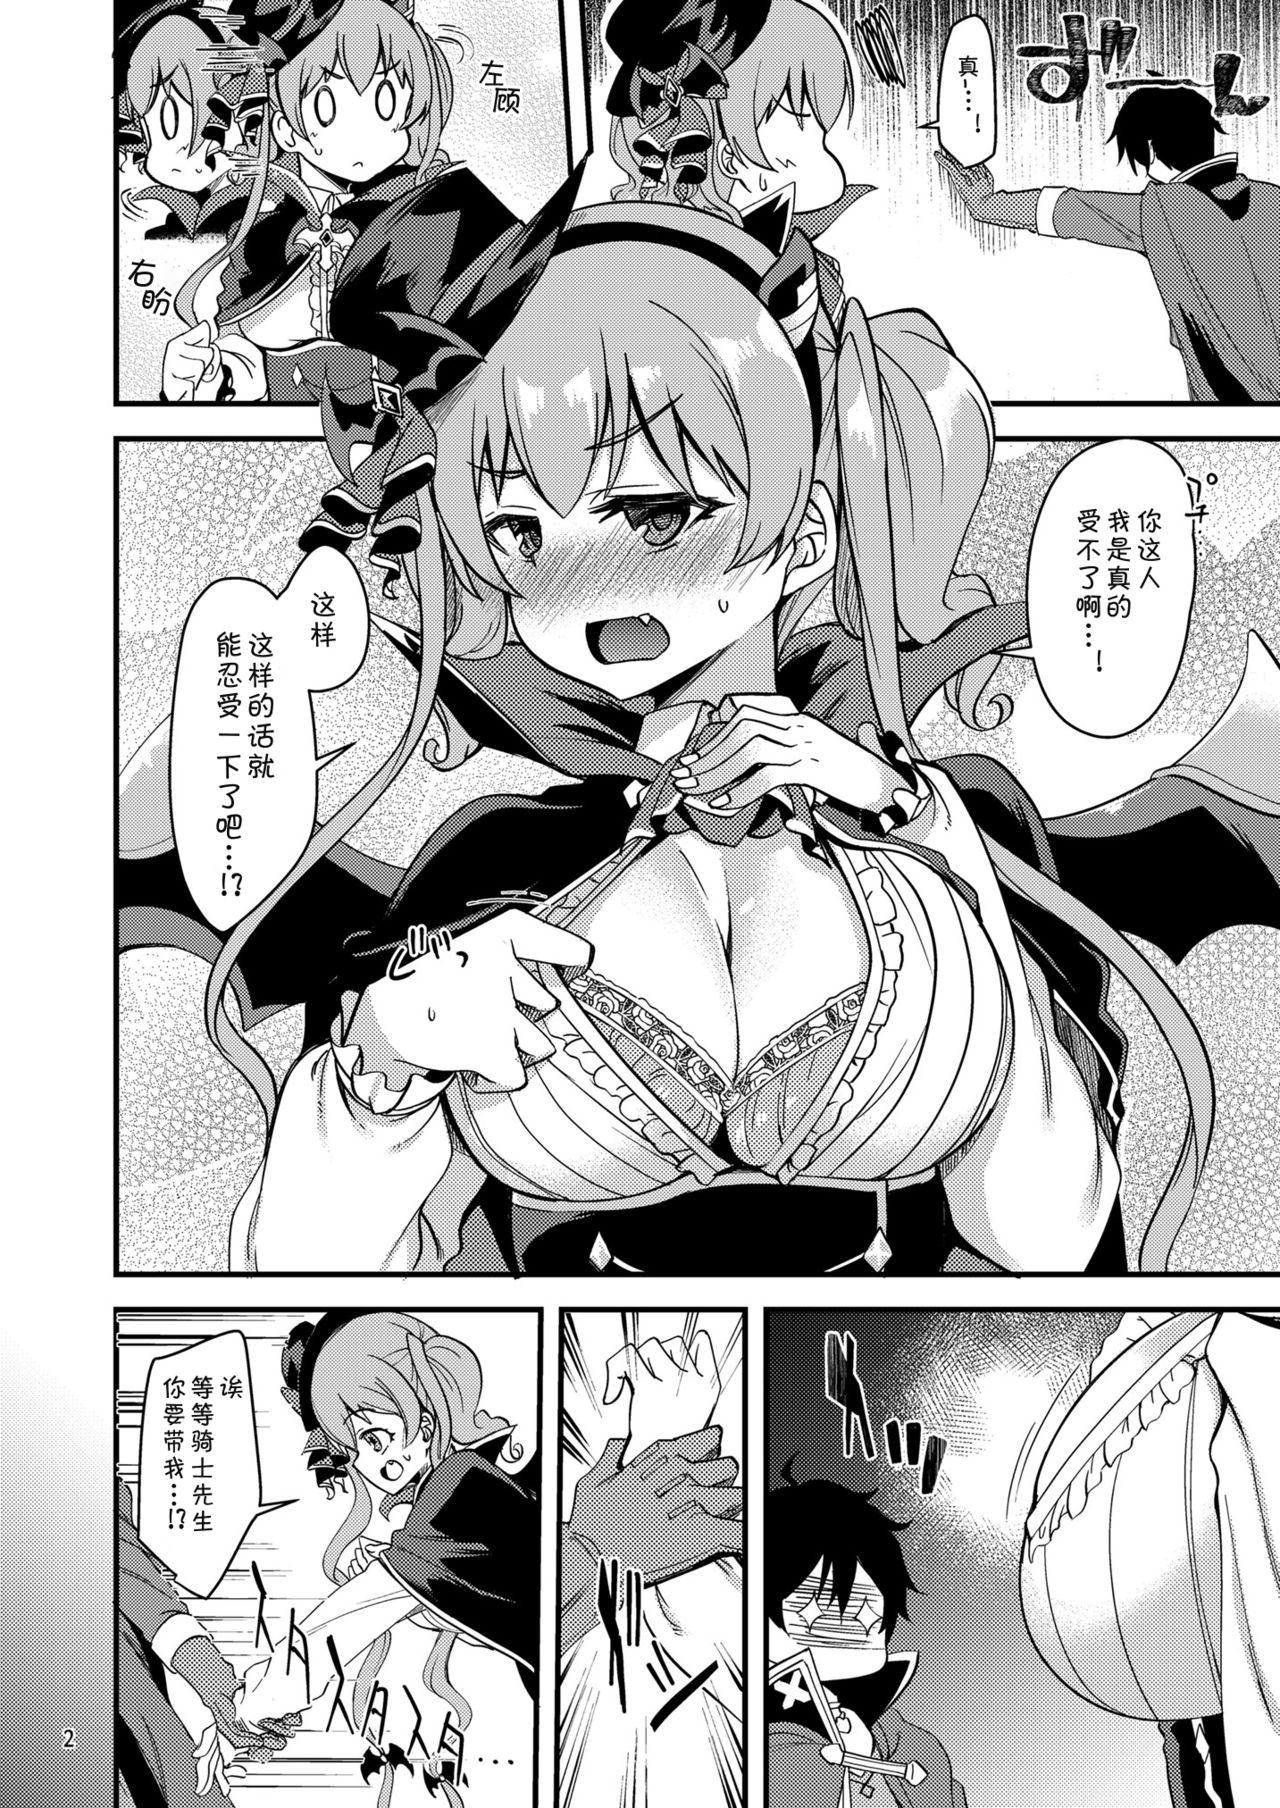 Cuckold Tsumugi Make Heroine Move!! 05 - Princess connect Kiss - Page 3